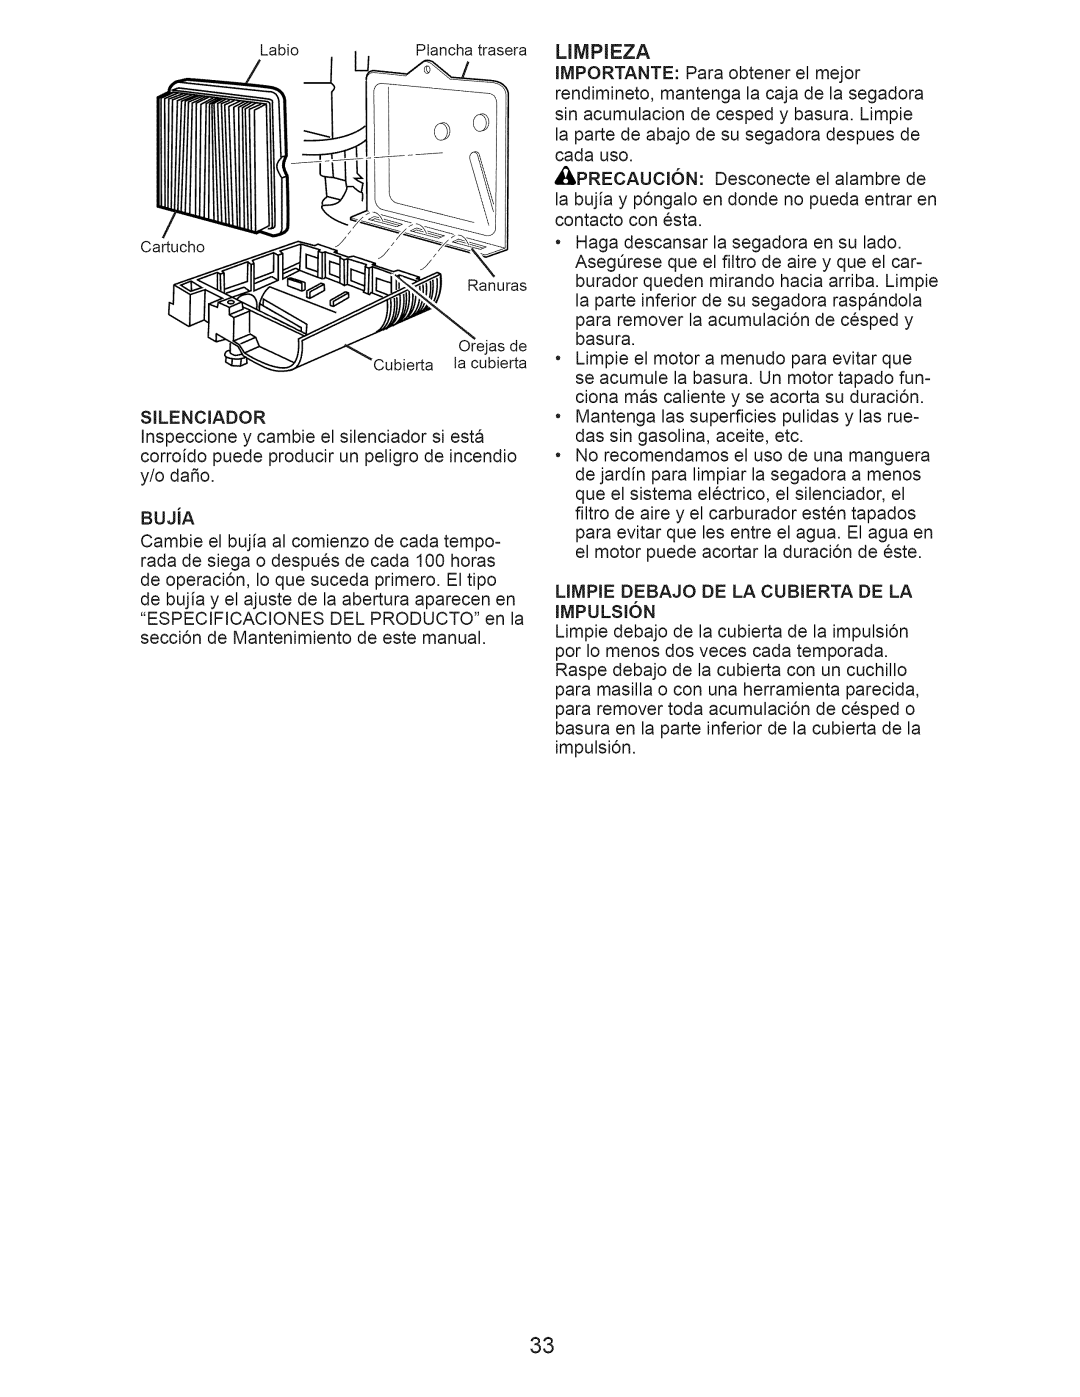 Craftsman 917.376234 manual Limpieza, LIMPIE DEBAJO DE LA CUBIERTA DE LA IMPULSI6N 